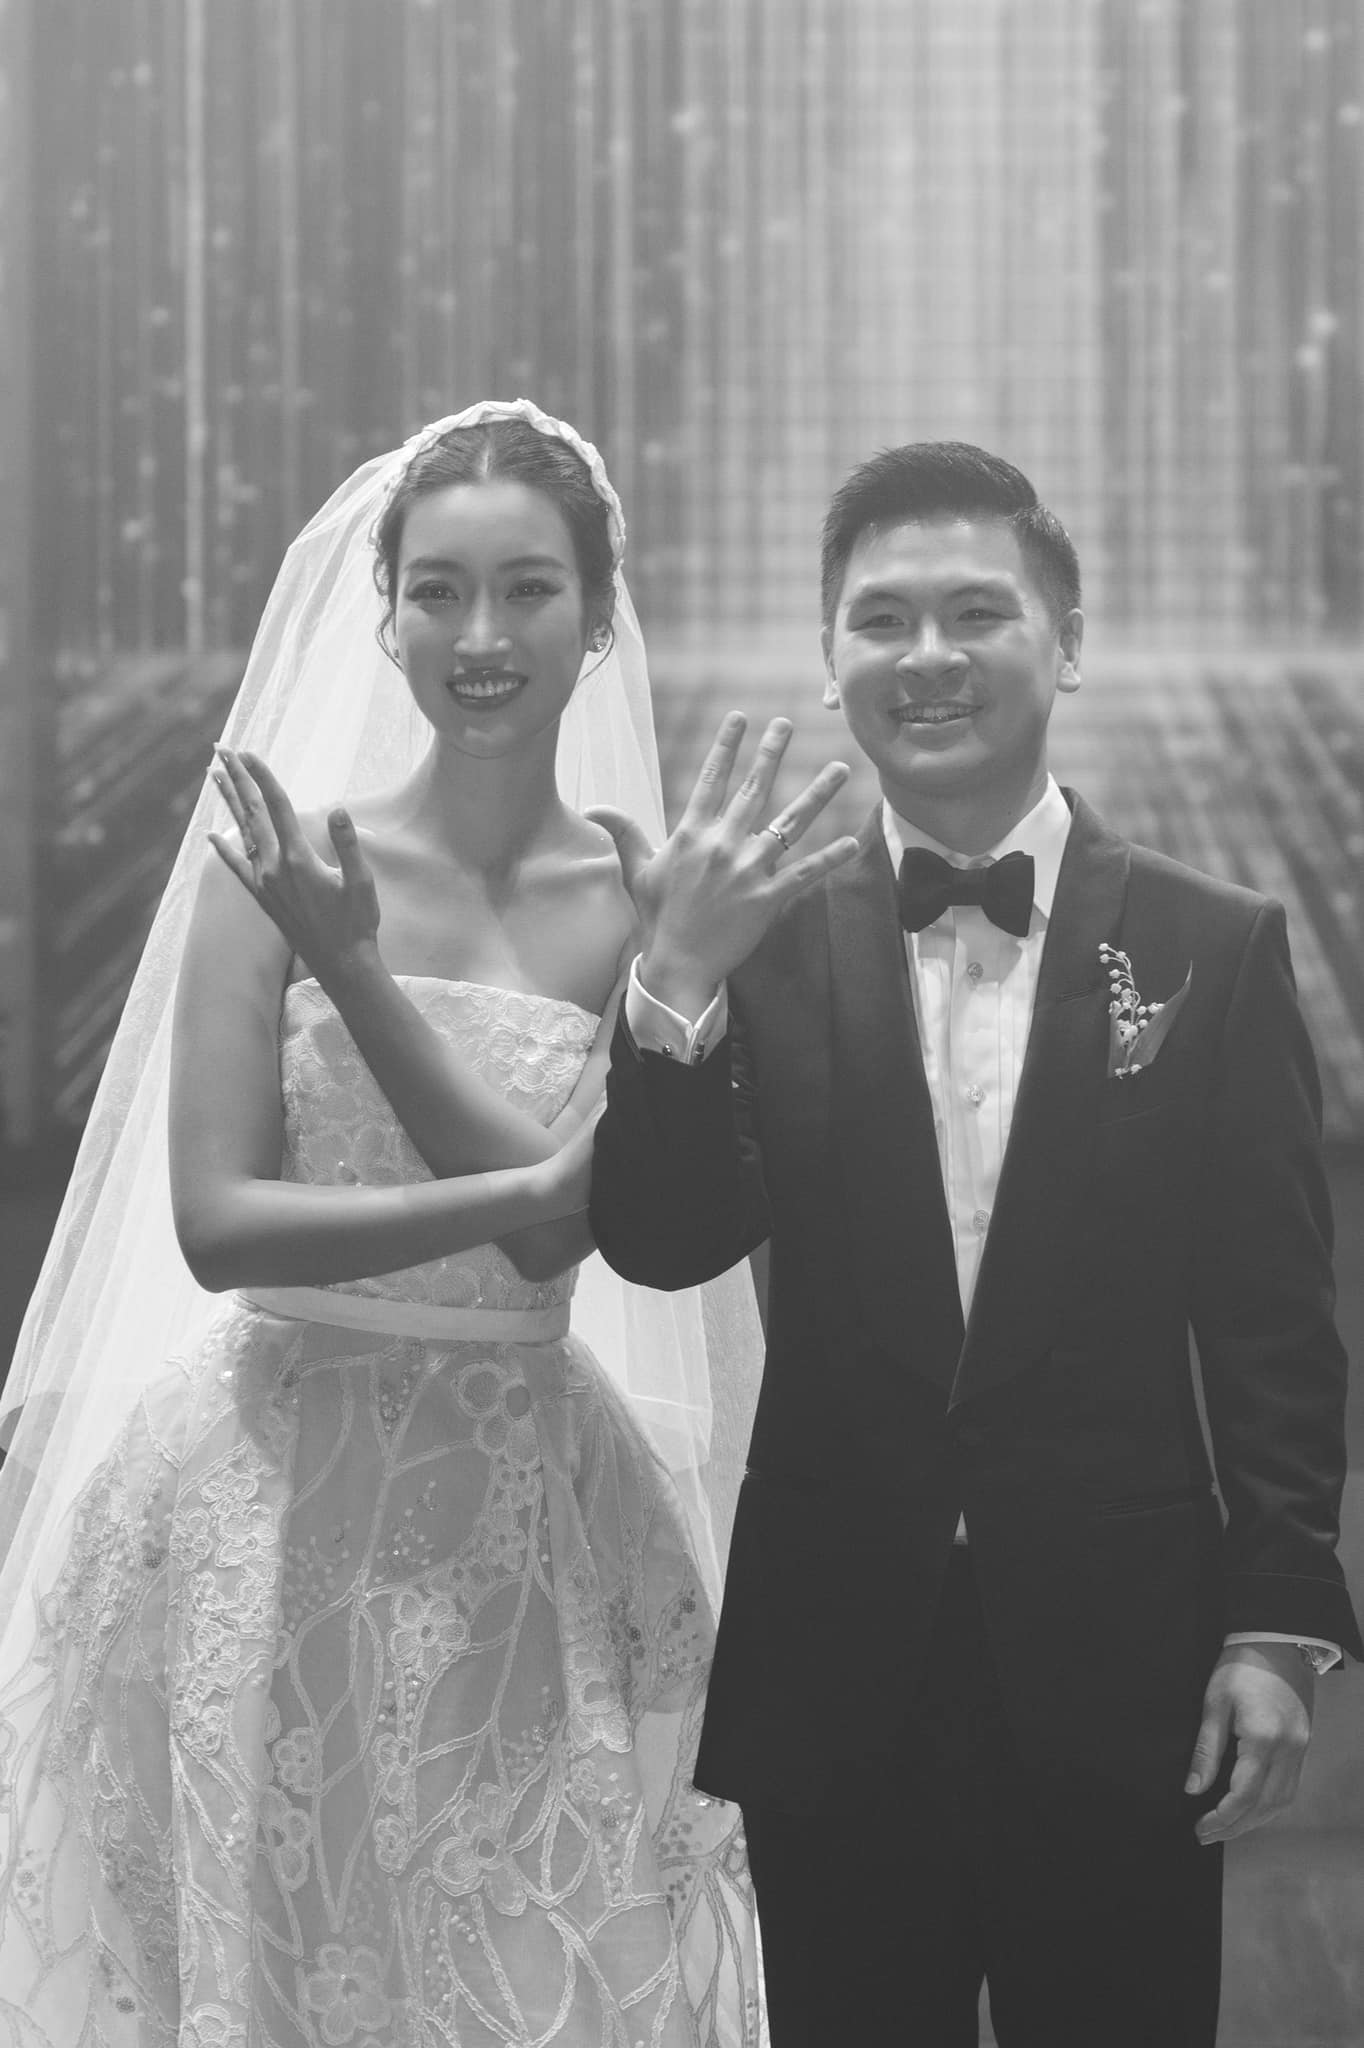 Cưng chiều hoa hậu Đỗ Mỹ Linh như Chủ tịch CLB Hà Nội, sẵn sàng quay những video 'vô tri' miễn là vợ vui - Ảnh 3.